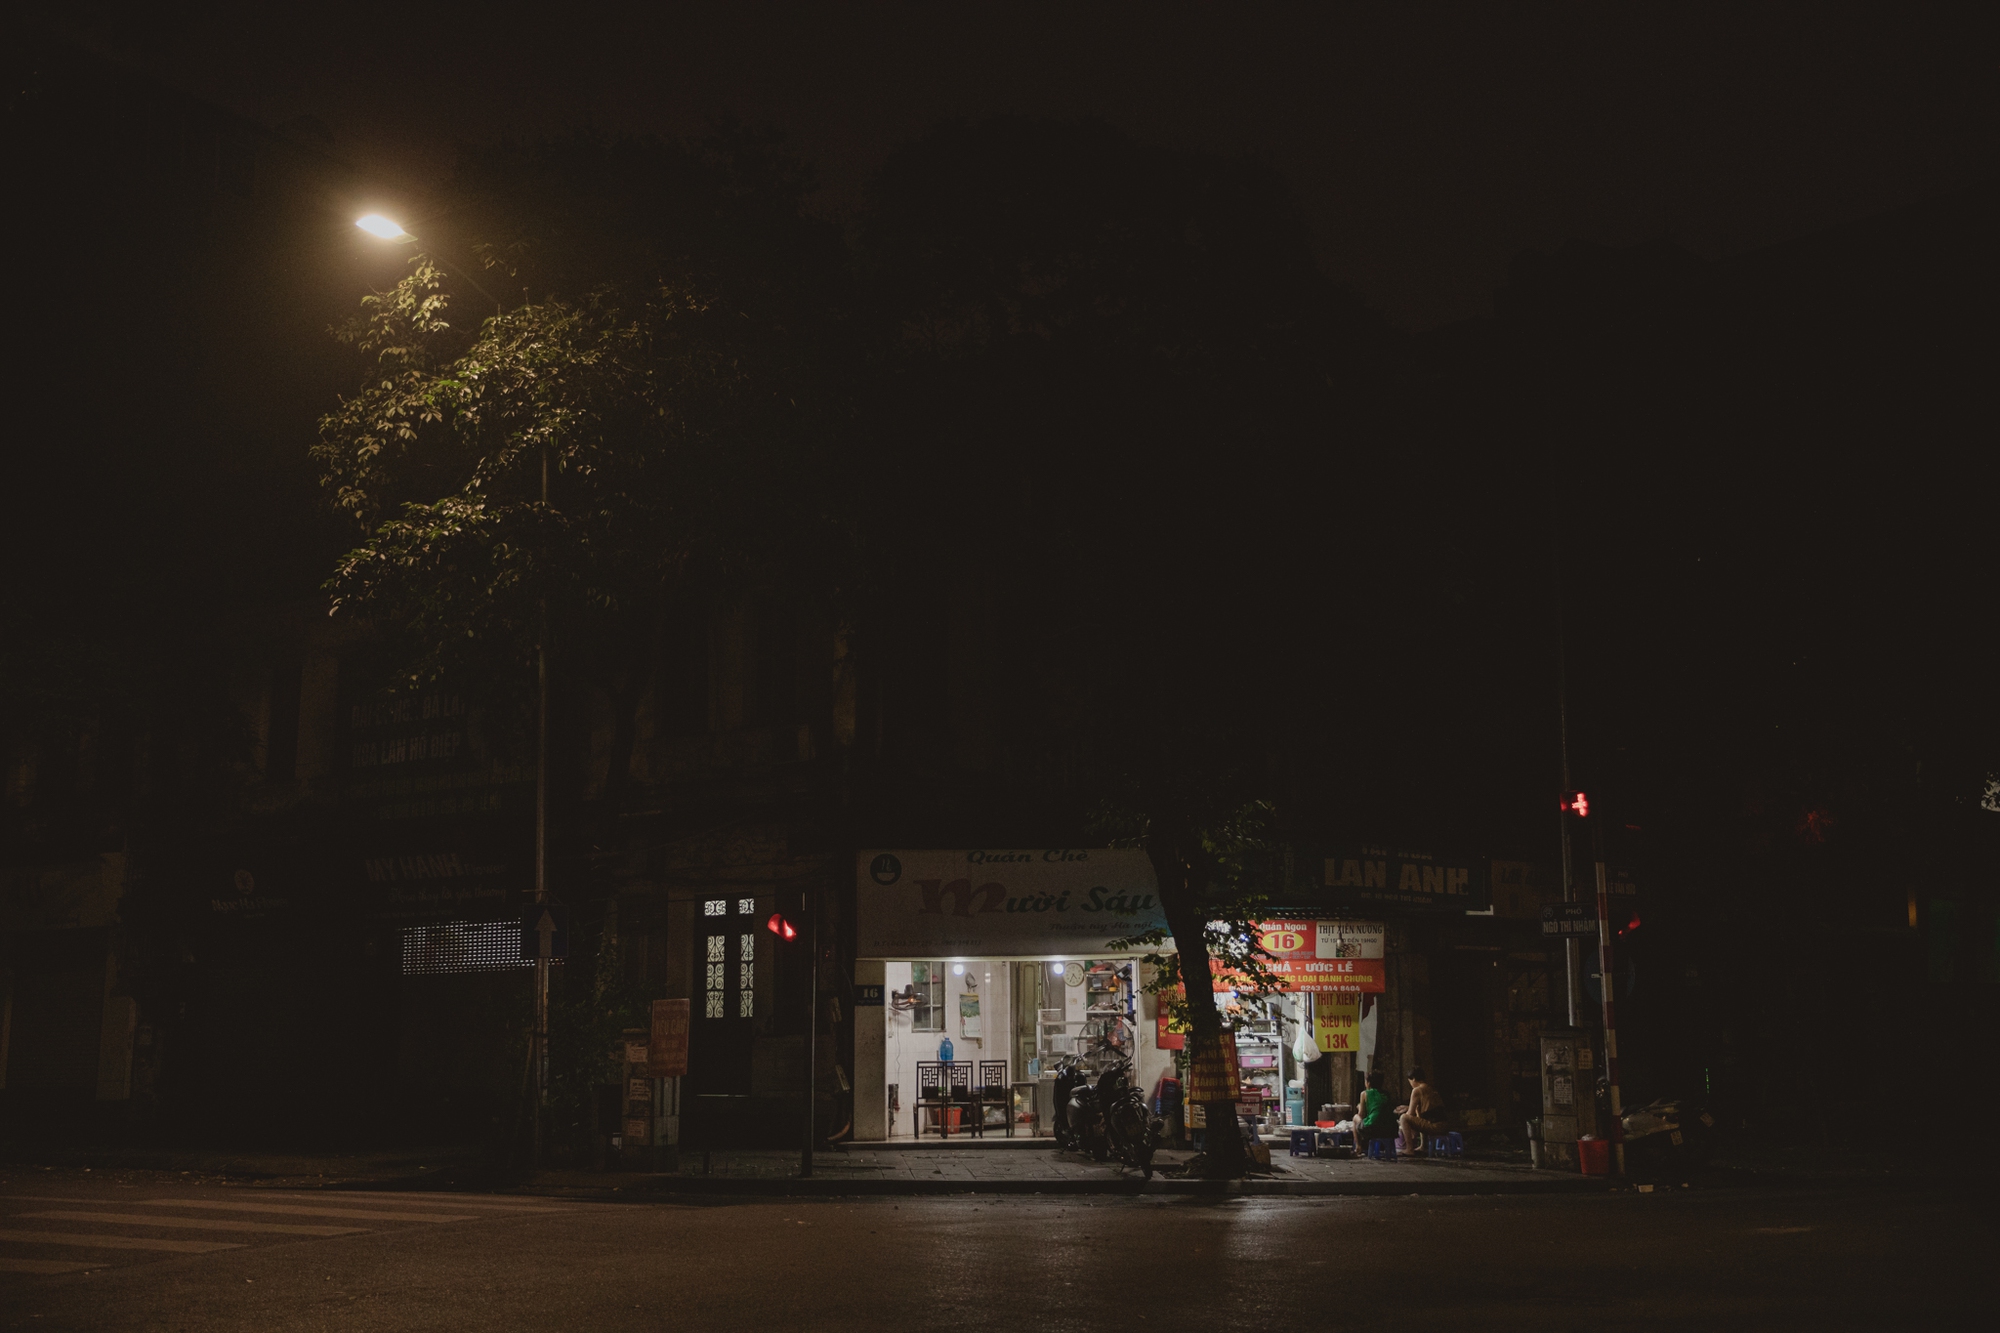 Đột nhập hàng chè nổi tiếng Hà Nội lúc nửa đêm, xem cảnh chuẩn bị cho ngày bán lớn nhất năm - Ảnh 1.